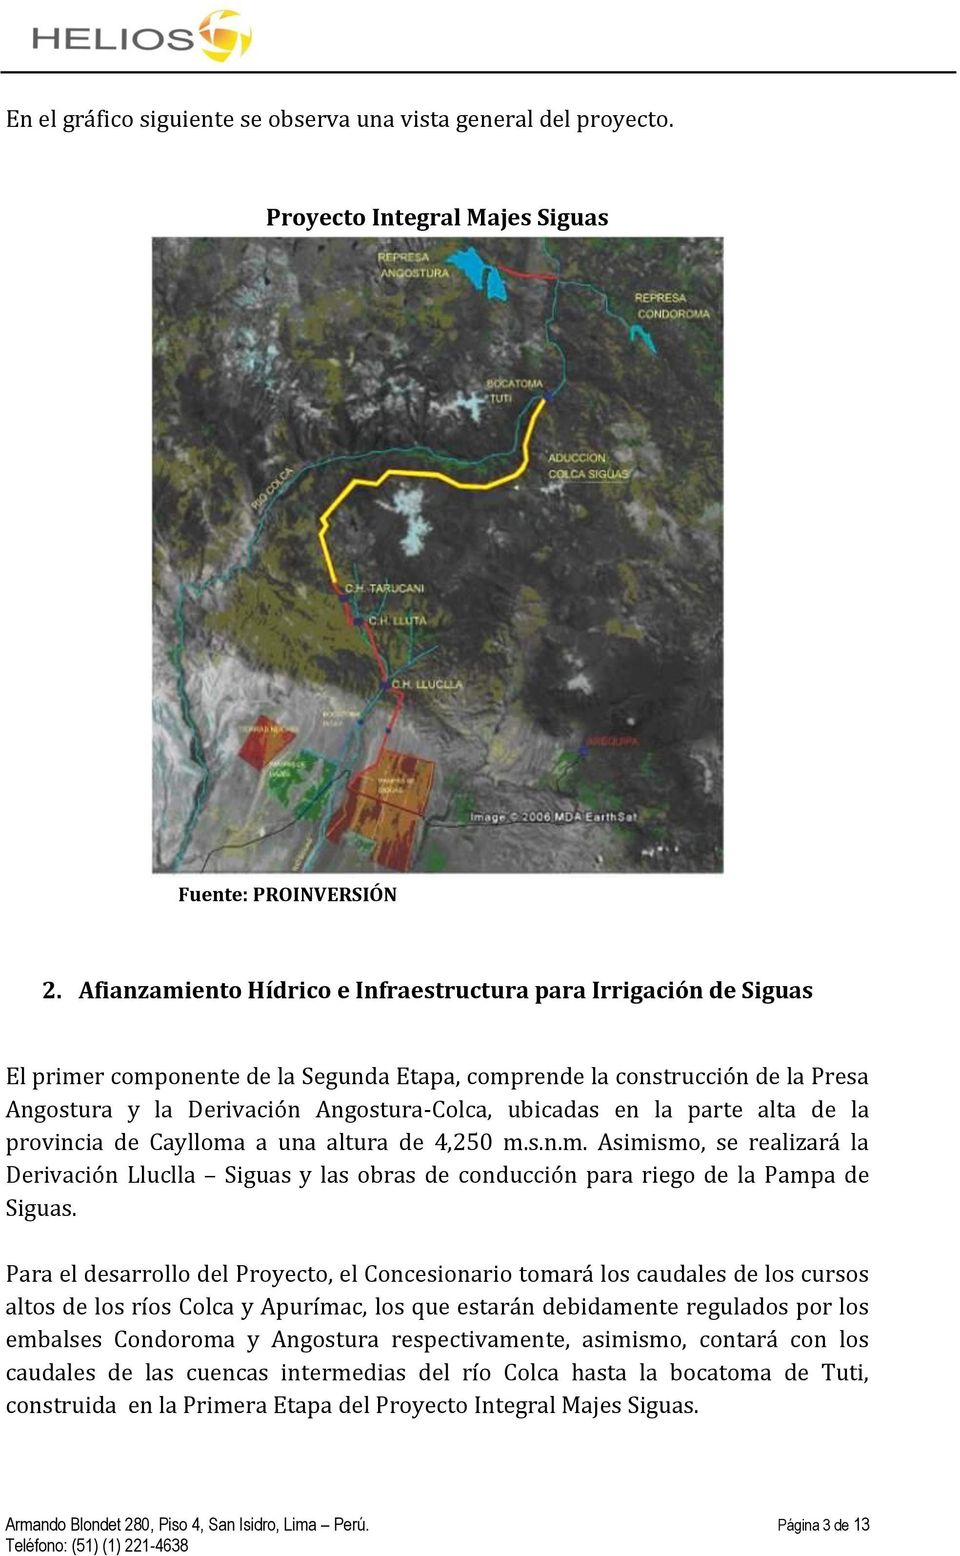 en la parte alta de la provincia de Caylloma a una altura de 4,250 m.s.n.m. Asimismo, se realizará la Derivación Lluclla Siguas y las obras de conducción para riego de la Pampa de Siguas.